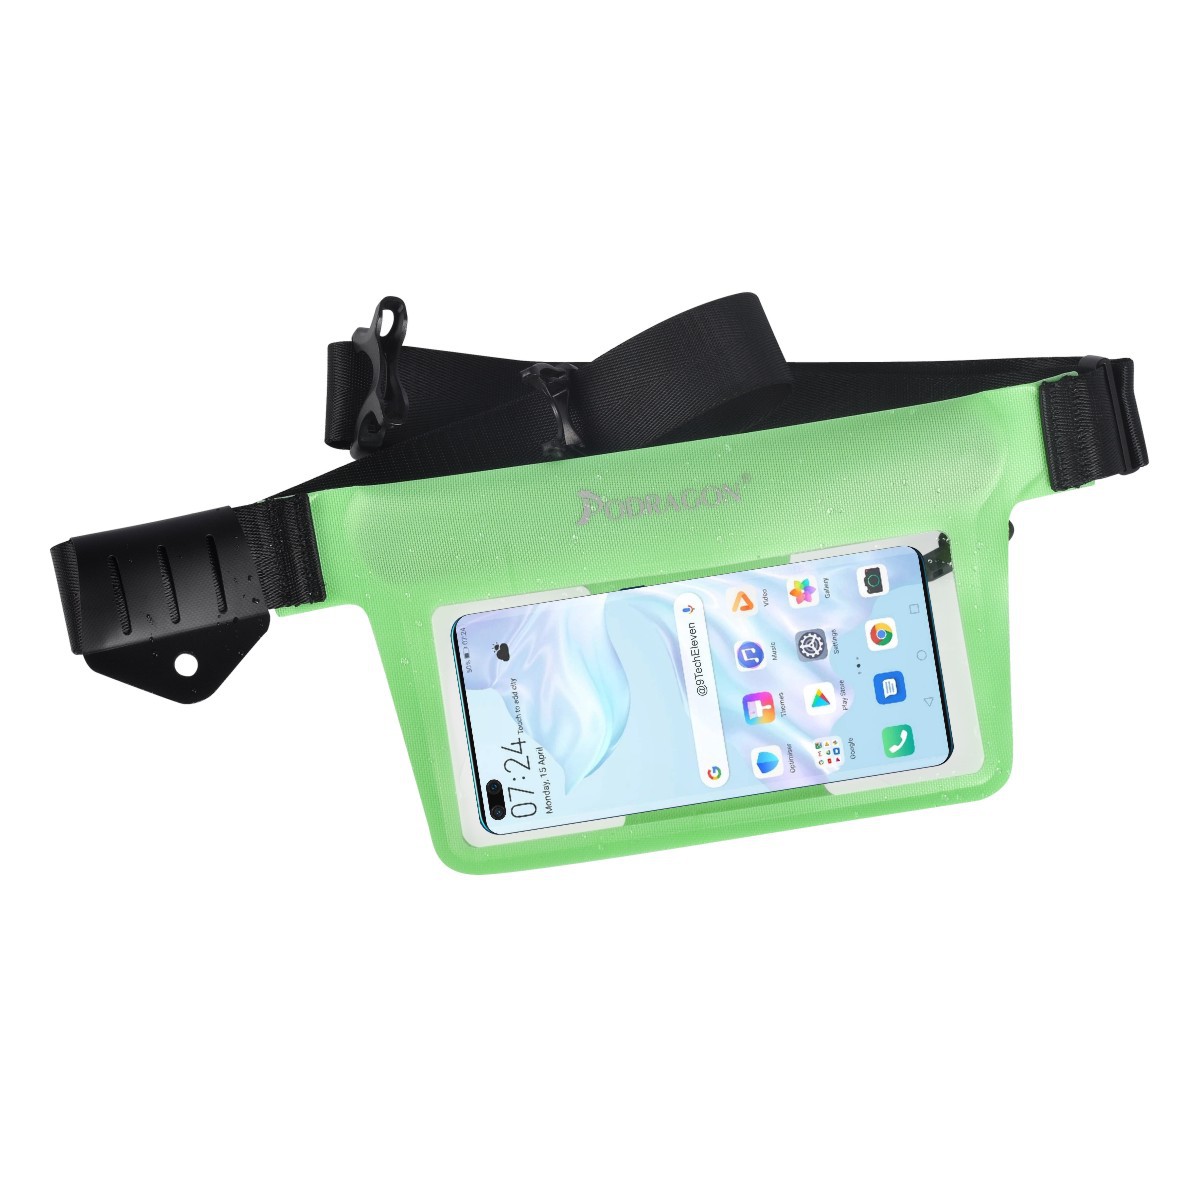 新款气密拉链手机防水袋浮潜腰包游泳潜水漂流冲浪证照大屏手机包